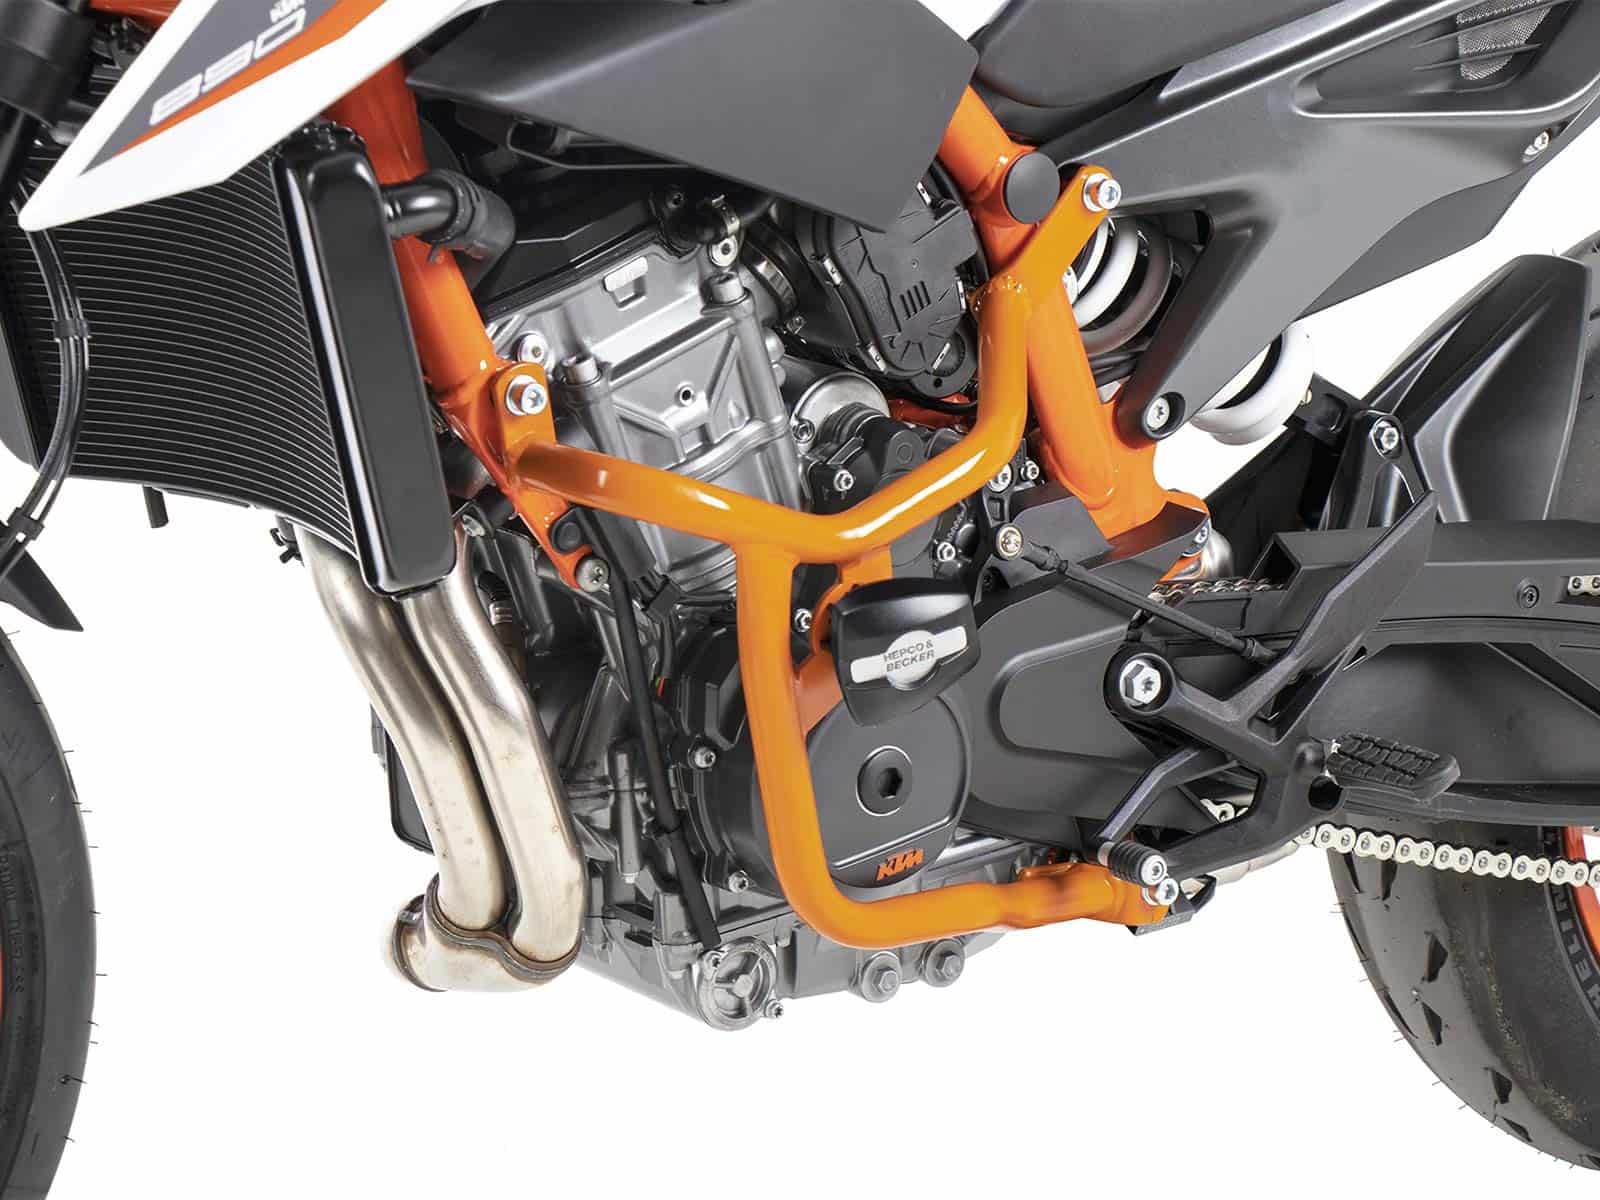 Motorschutzbügel inkl. Protectionpad orange für KTM 790 Duke (2018-)